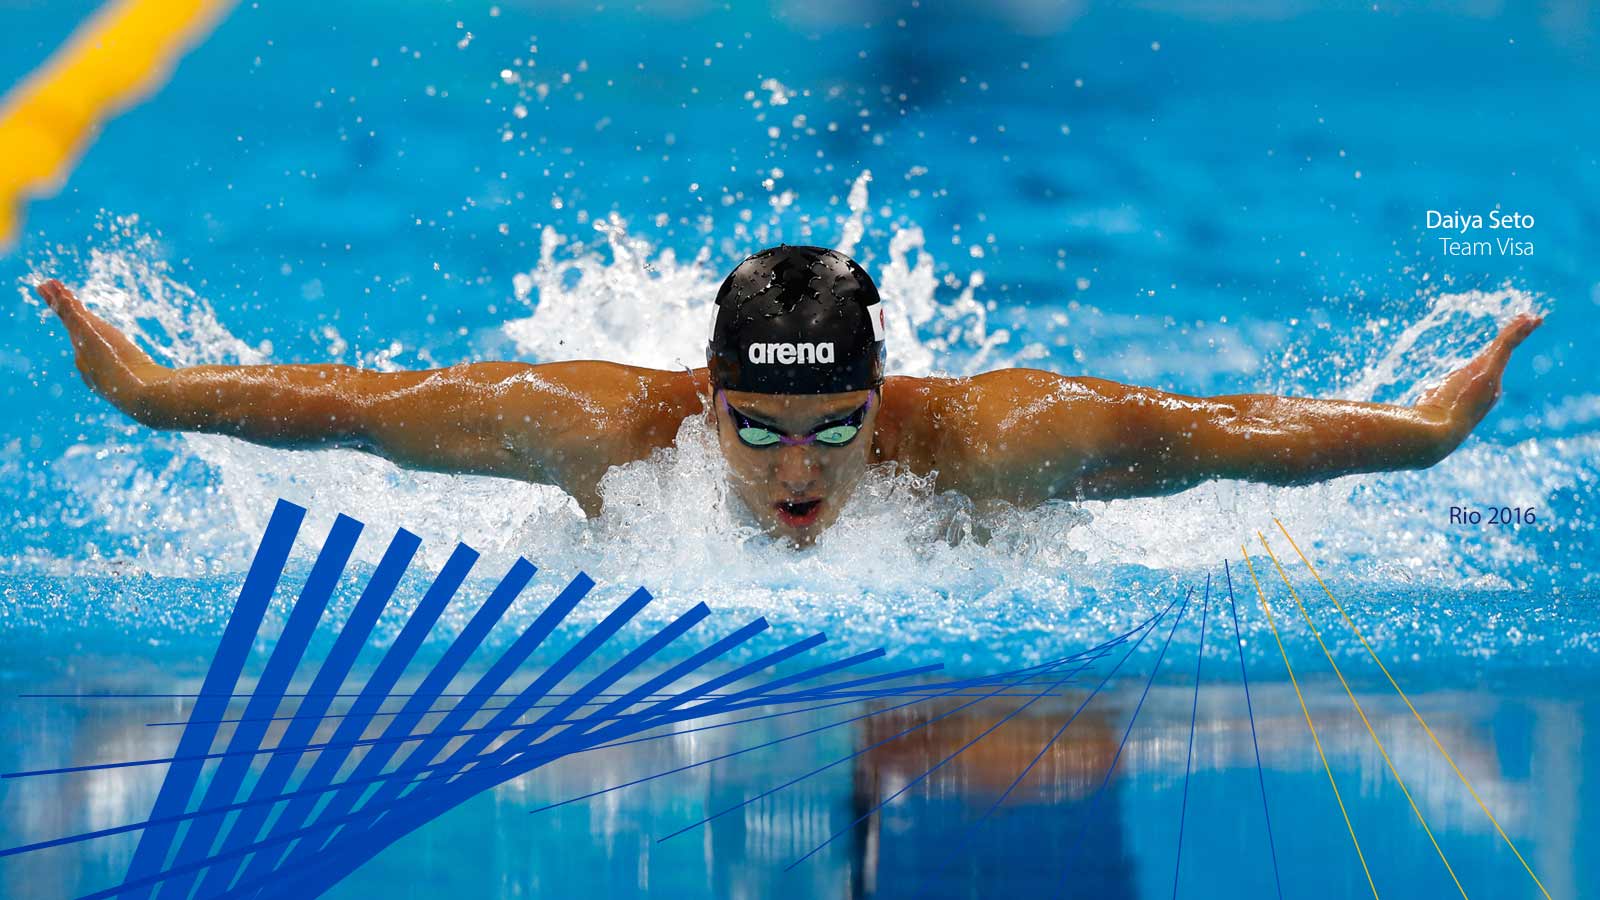 Daiya Seto at Rio Olympic Games in 2016